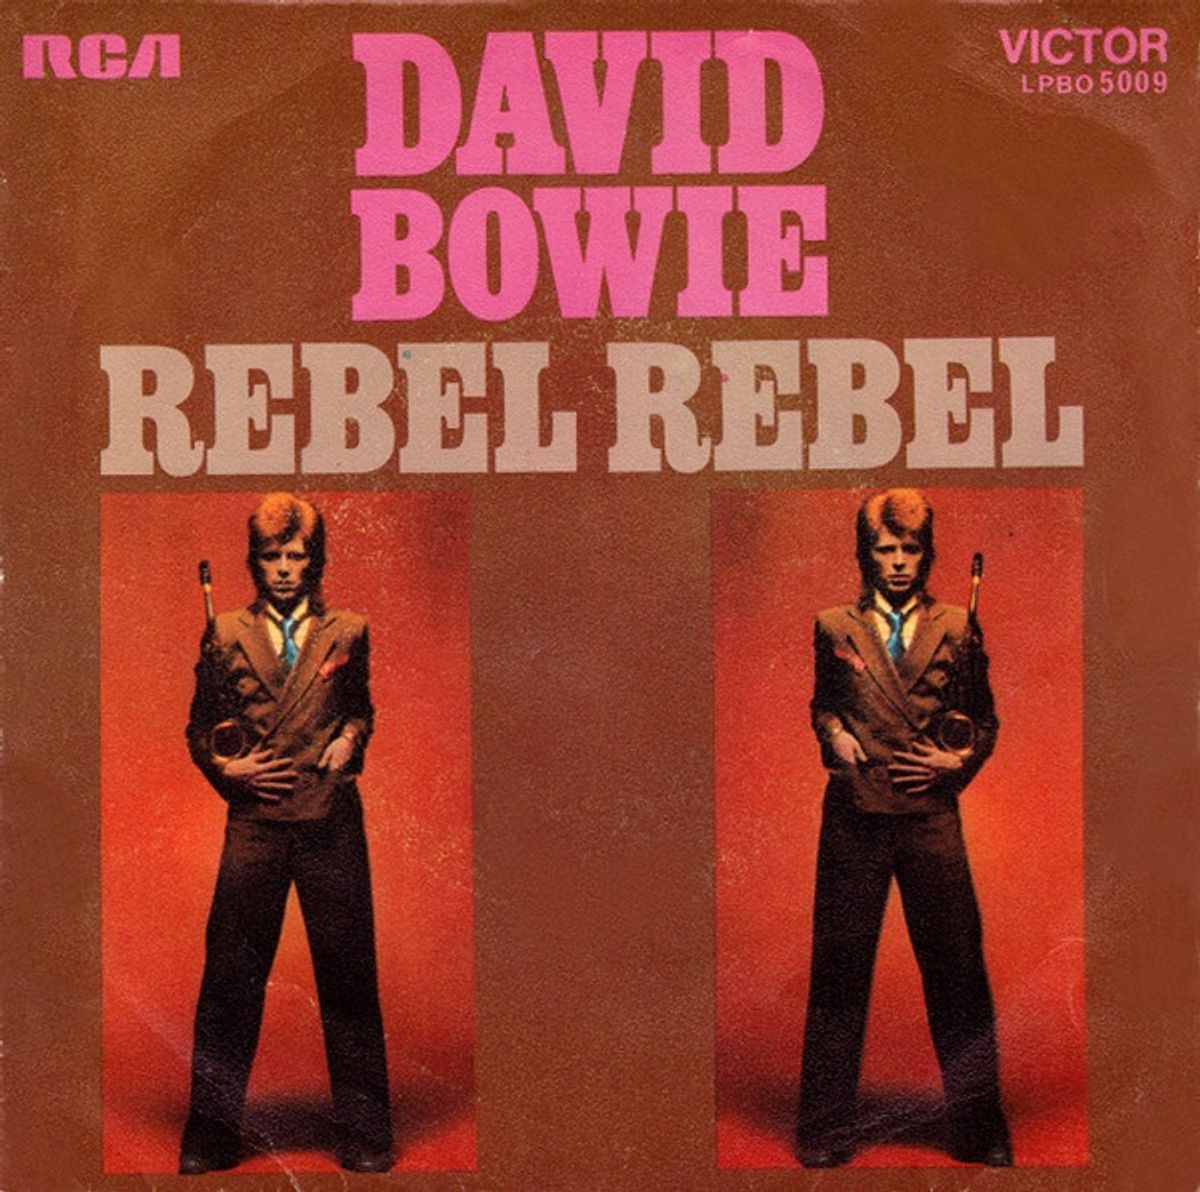 #RiffORama - David Bowie - Rebel Rebel (1974)